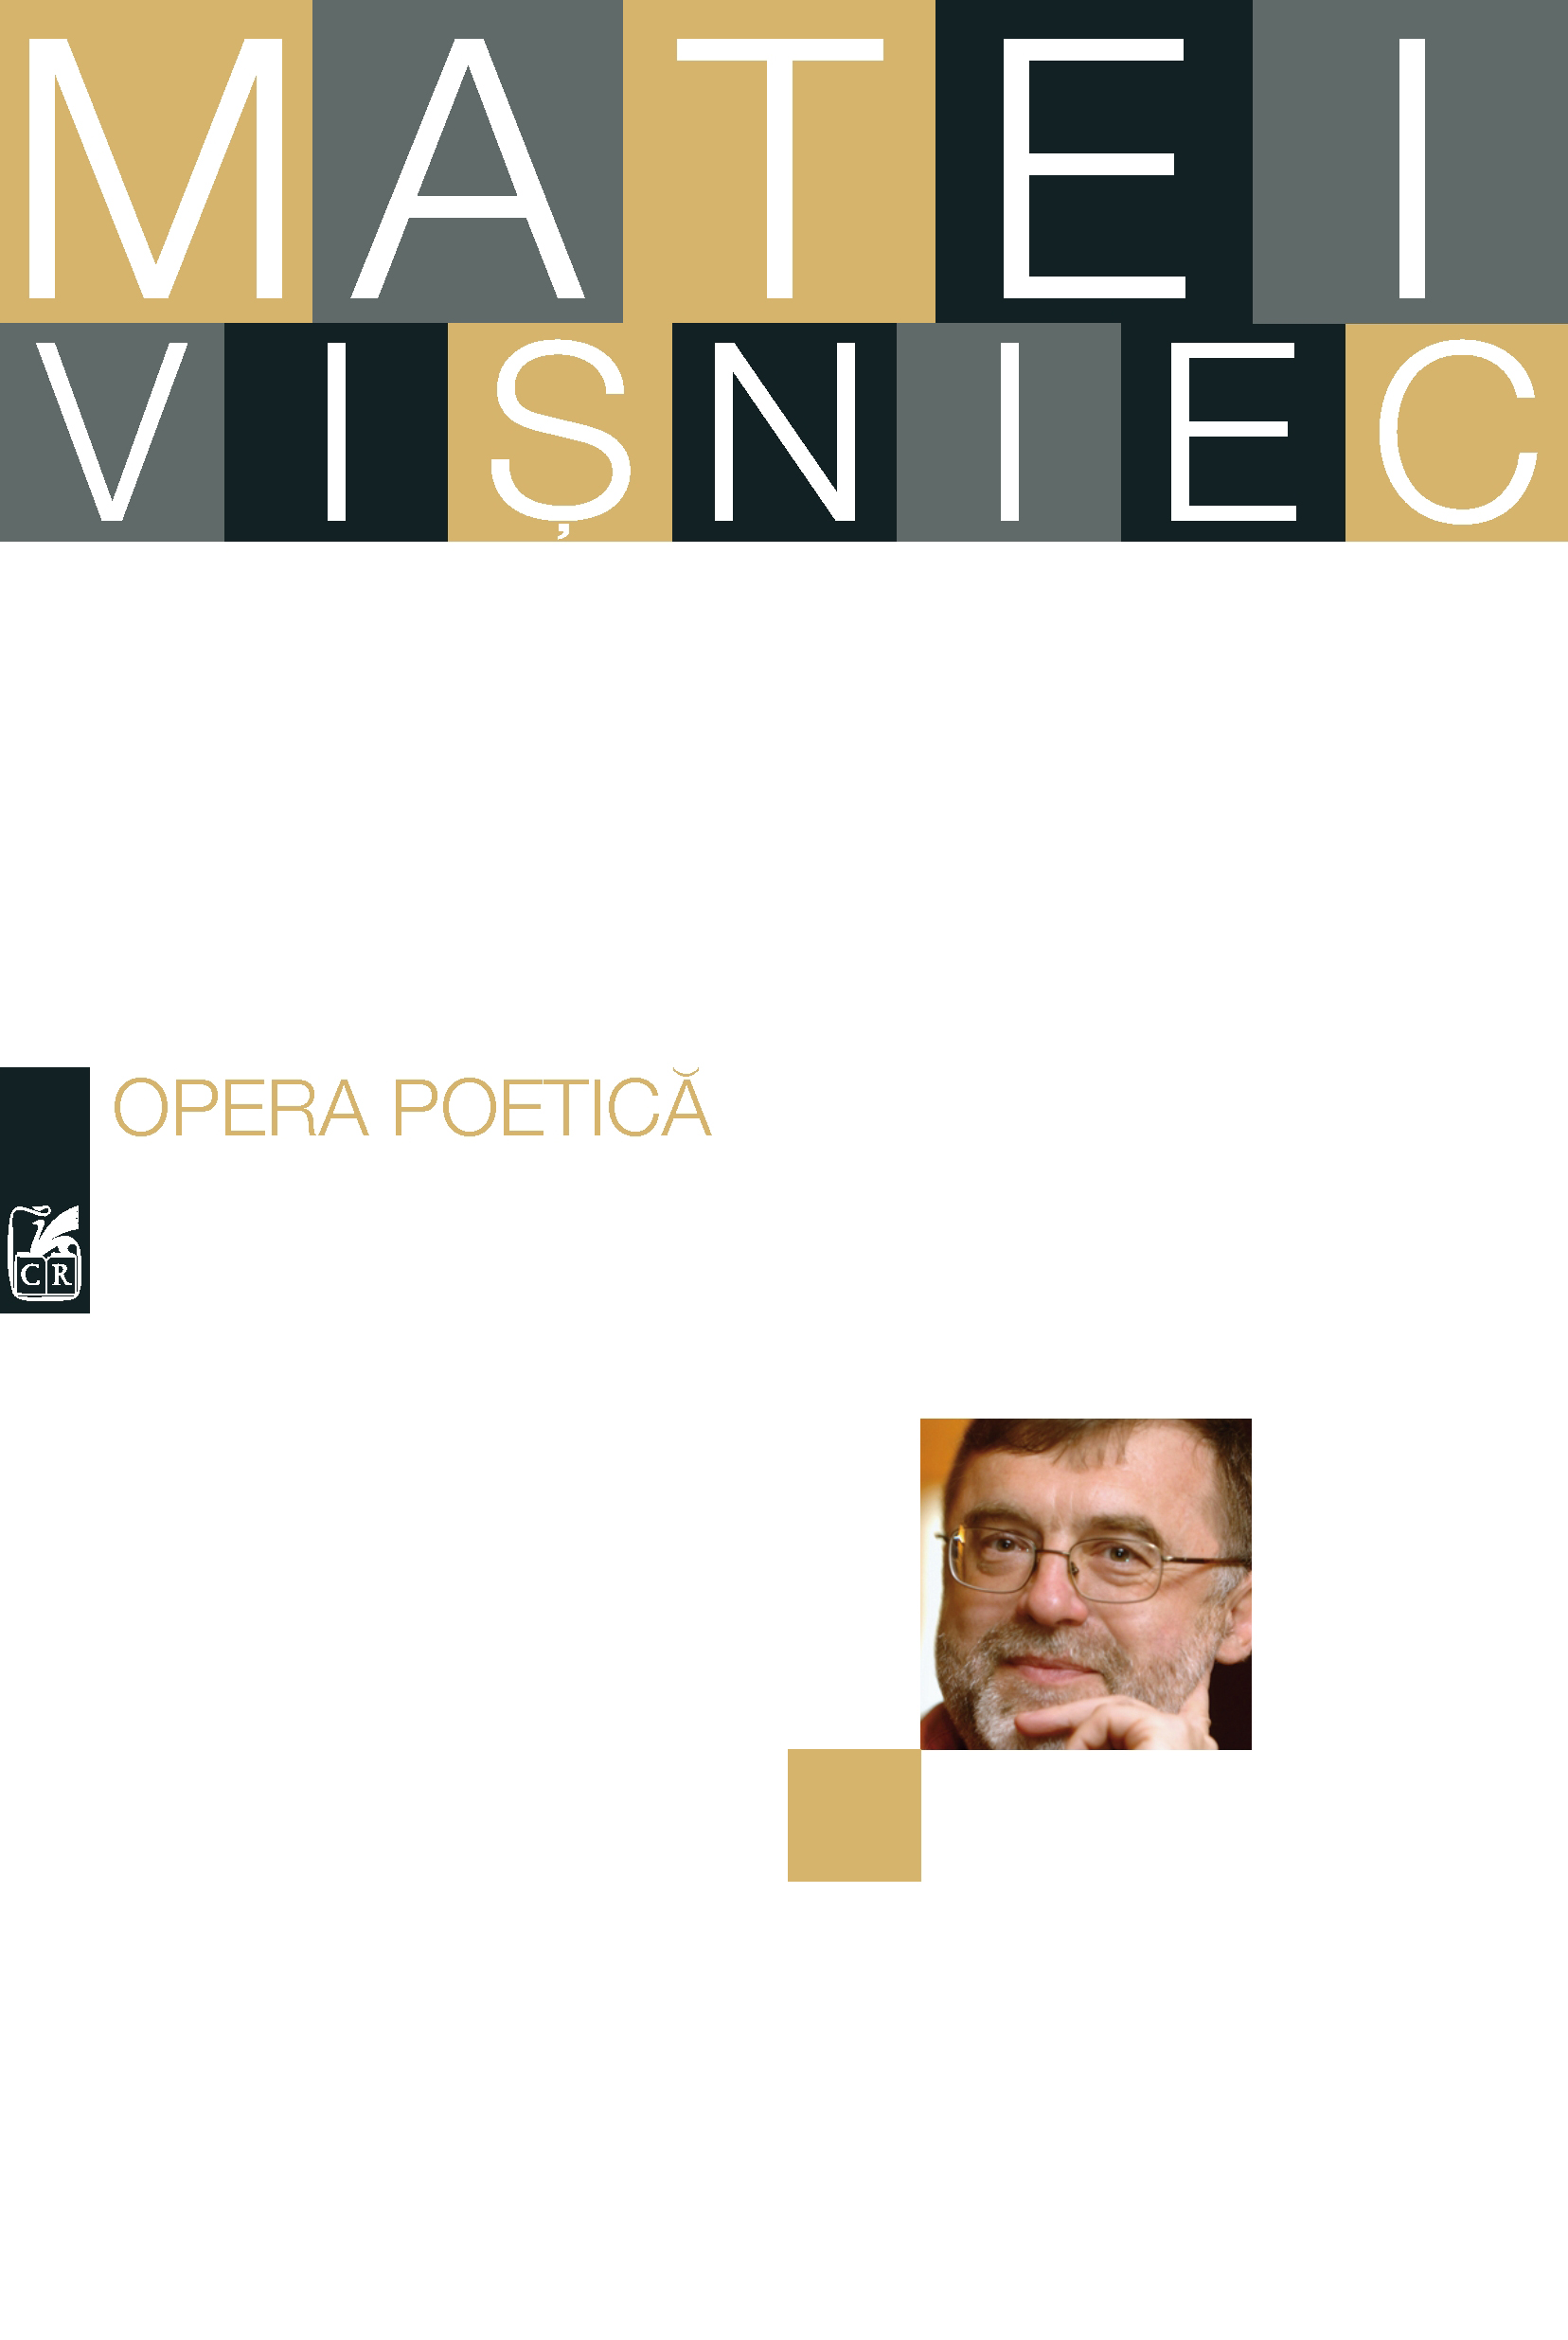 Opera poetica. Matei Visniec | Matei Visniec carte imagine 2022